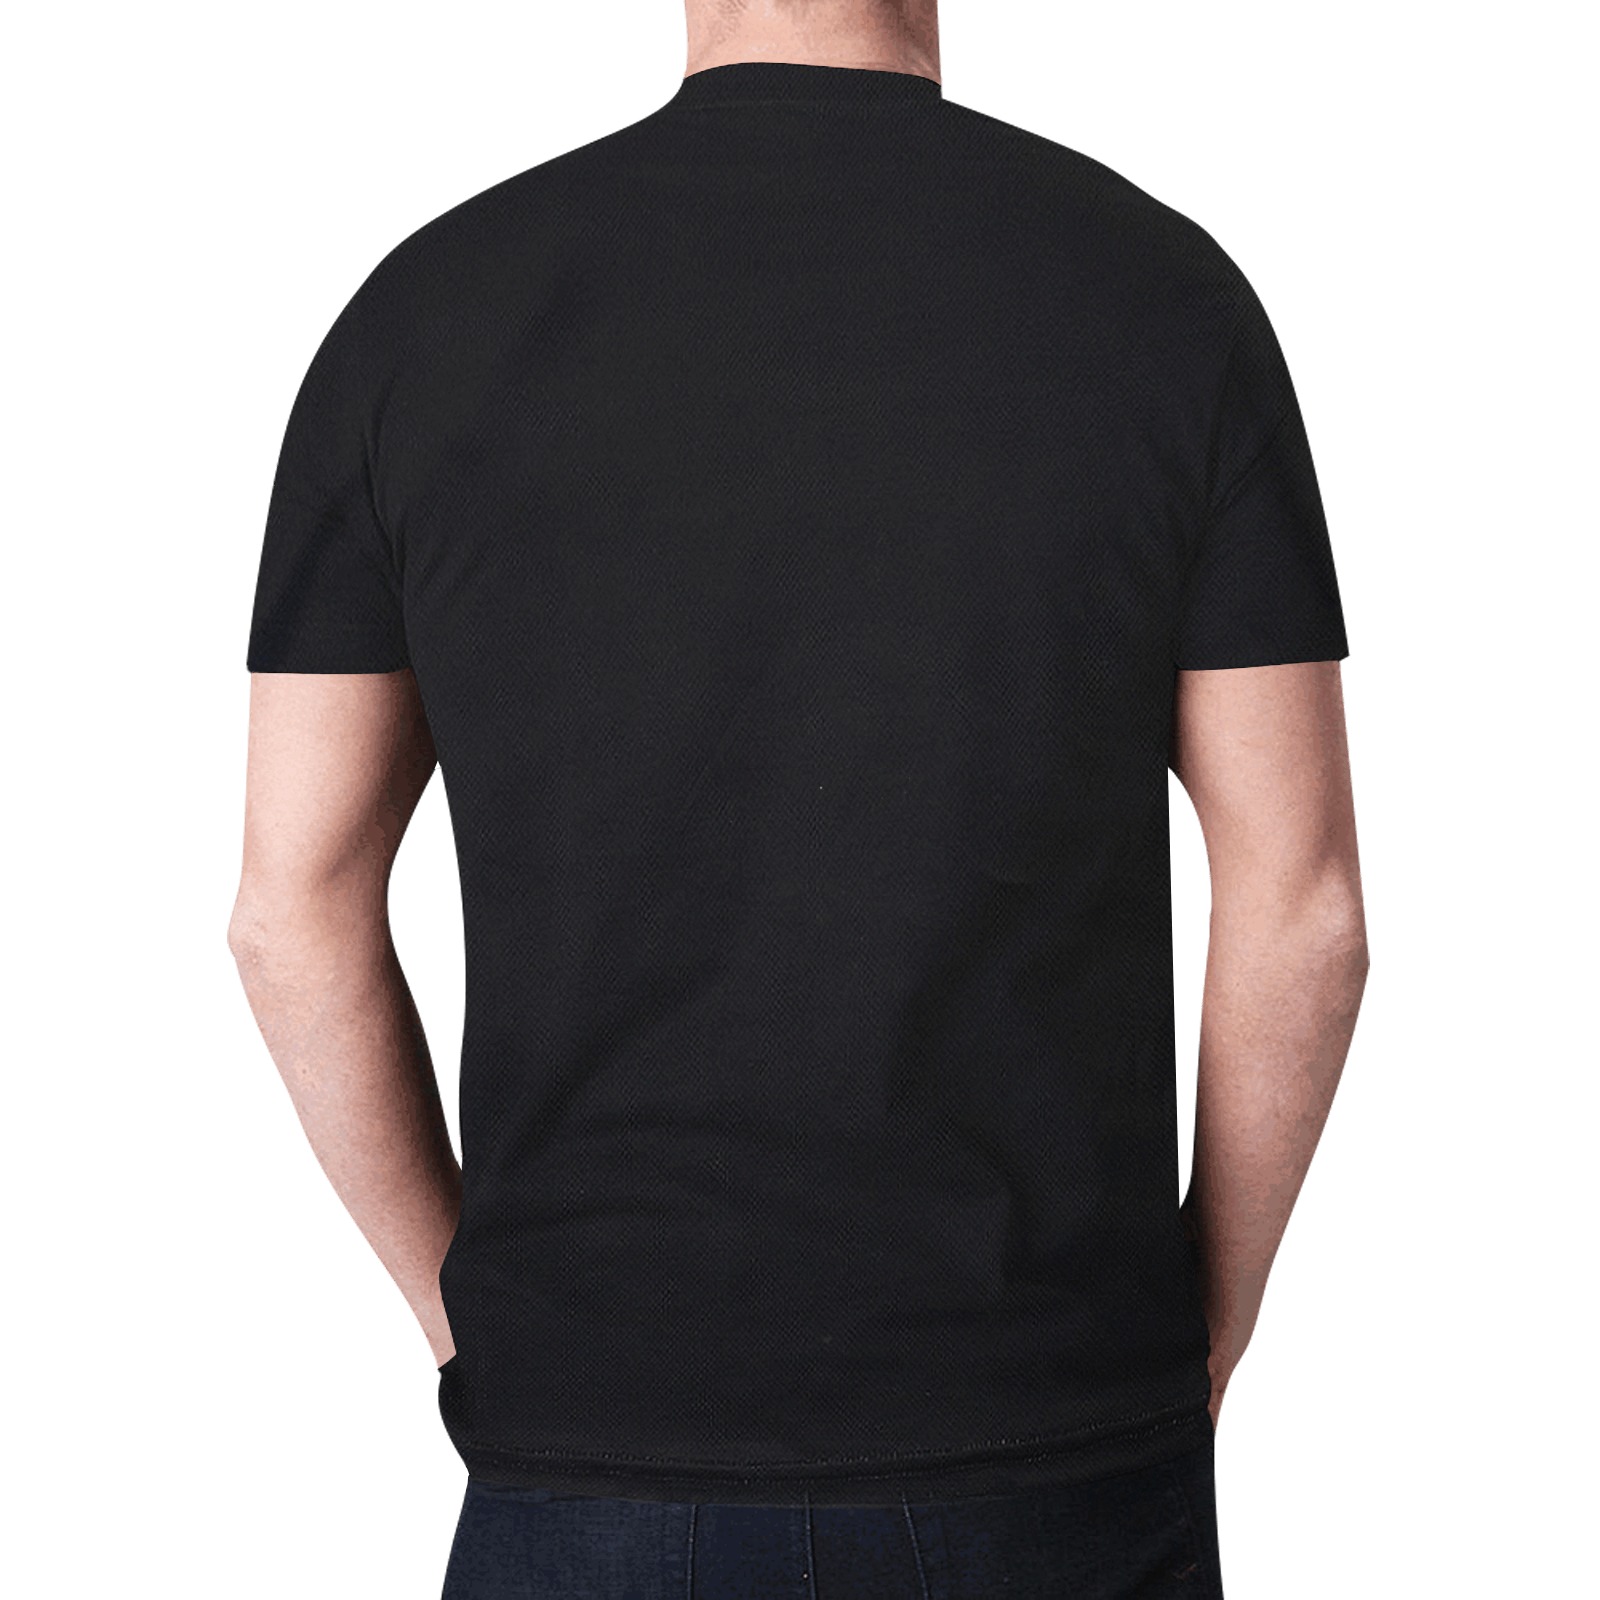 MY FIRE STILL BLAZES New All Over Print T-shirt for Men (Model T45)